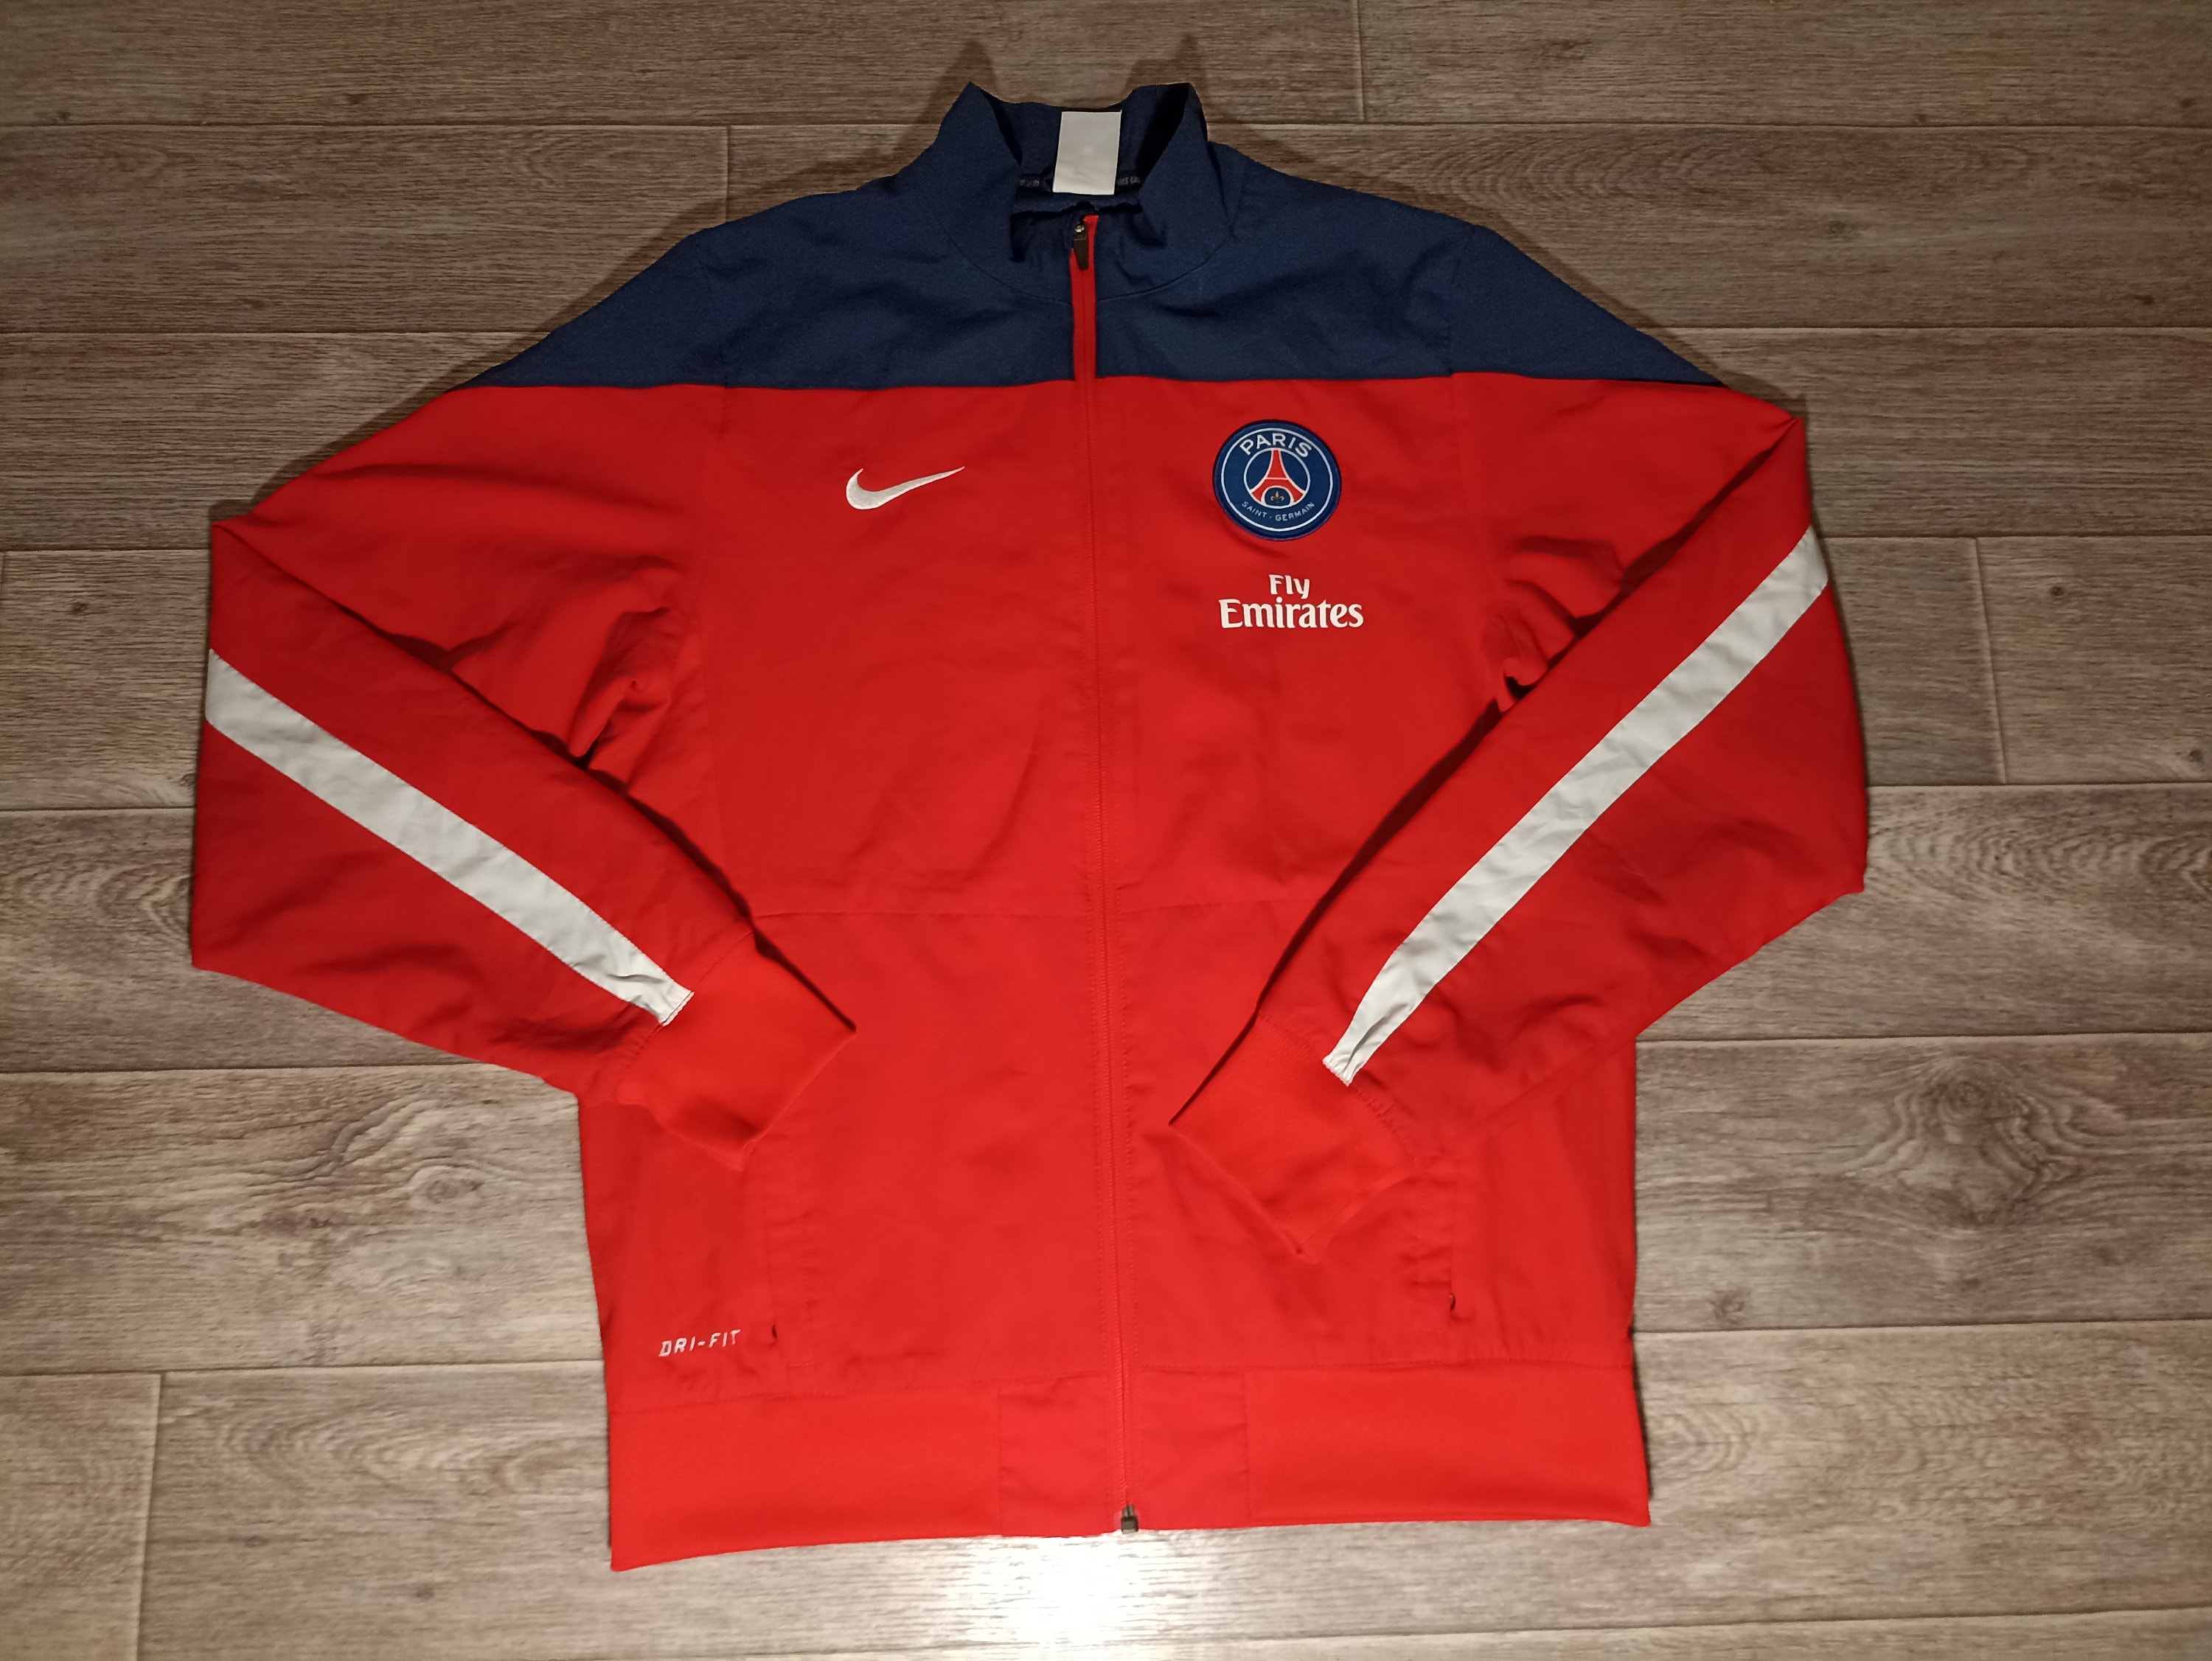 Paris Saint-Germain Team 31 Courtside SE Men's Nike Soccer Graphic Jacket.